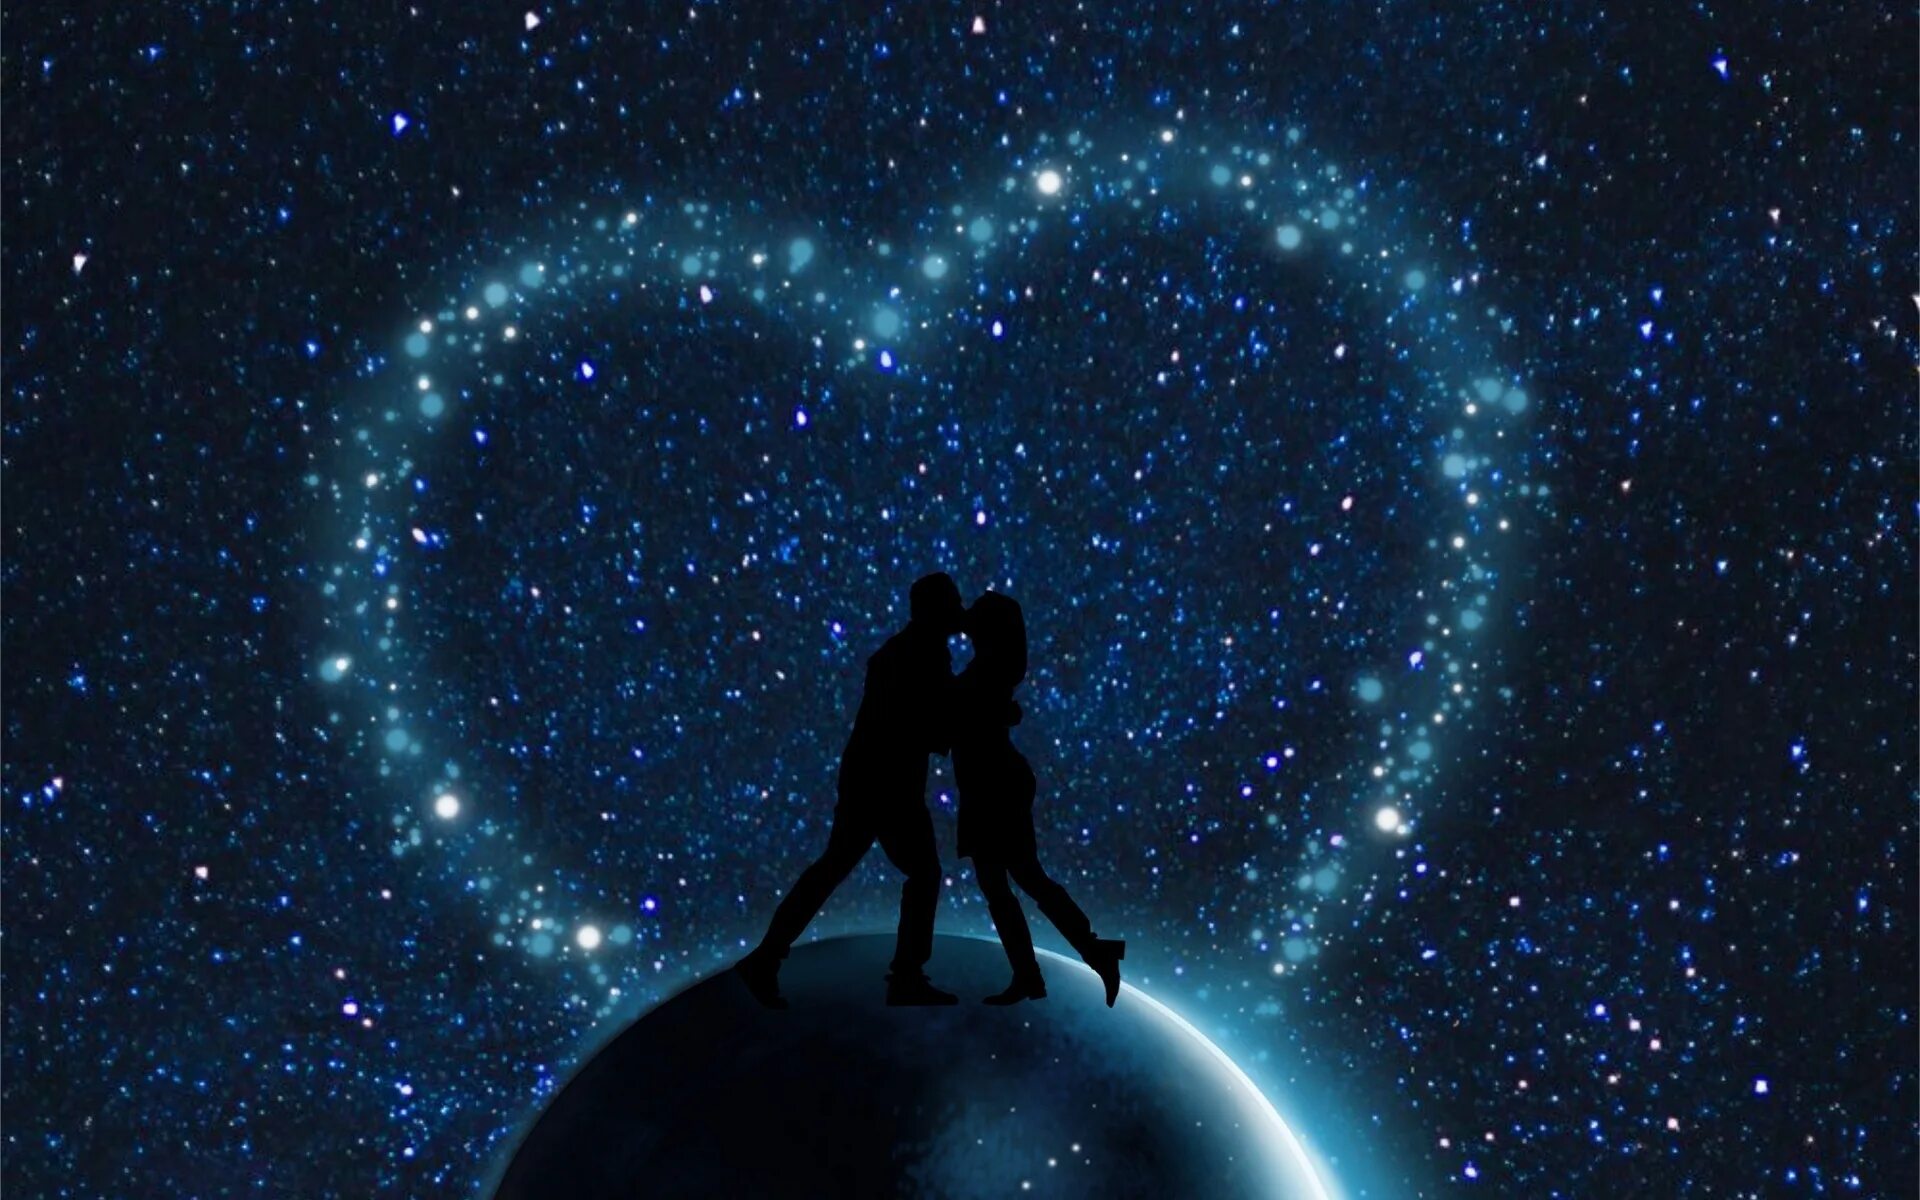 Звезда в небо небо твоем сердце лакорн. Двое под звездами. Космос любовь. Пара на фоне звездного неба. Вселенная и любовь.